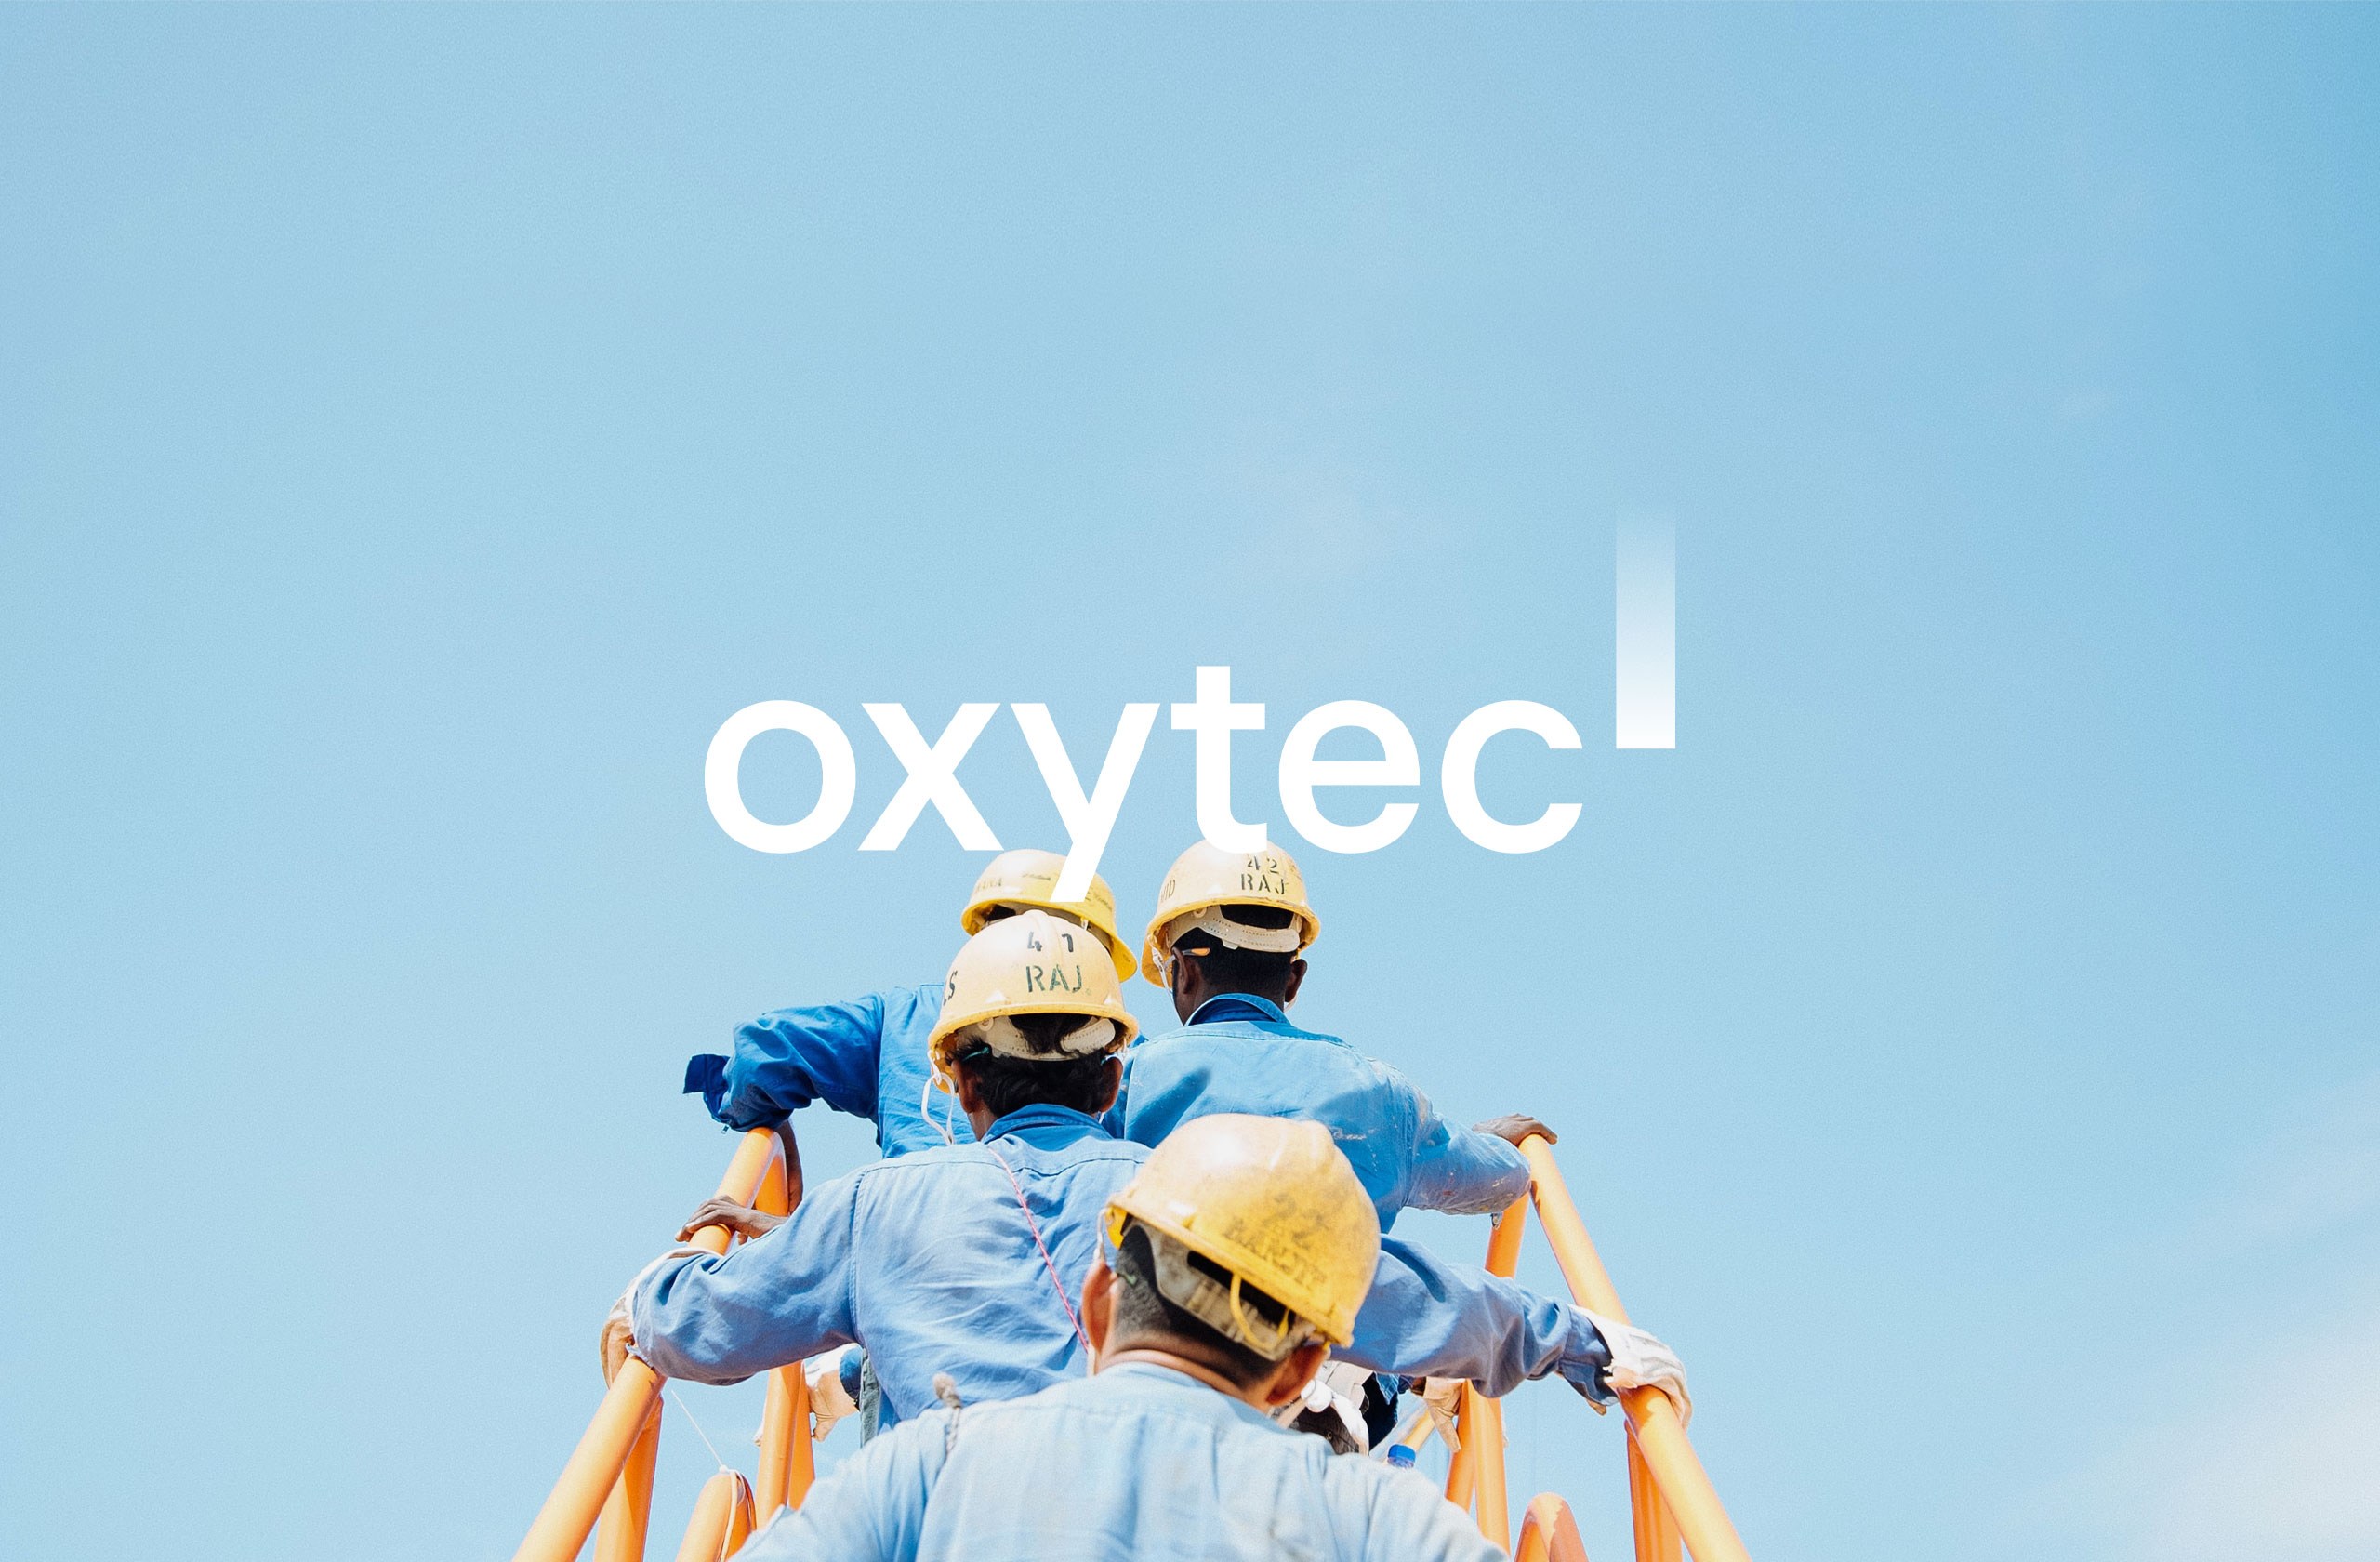 Oxytec